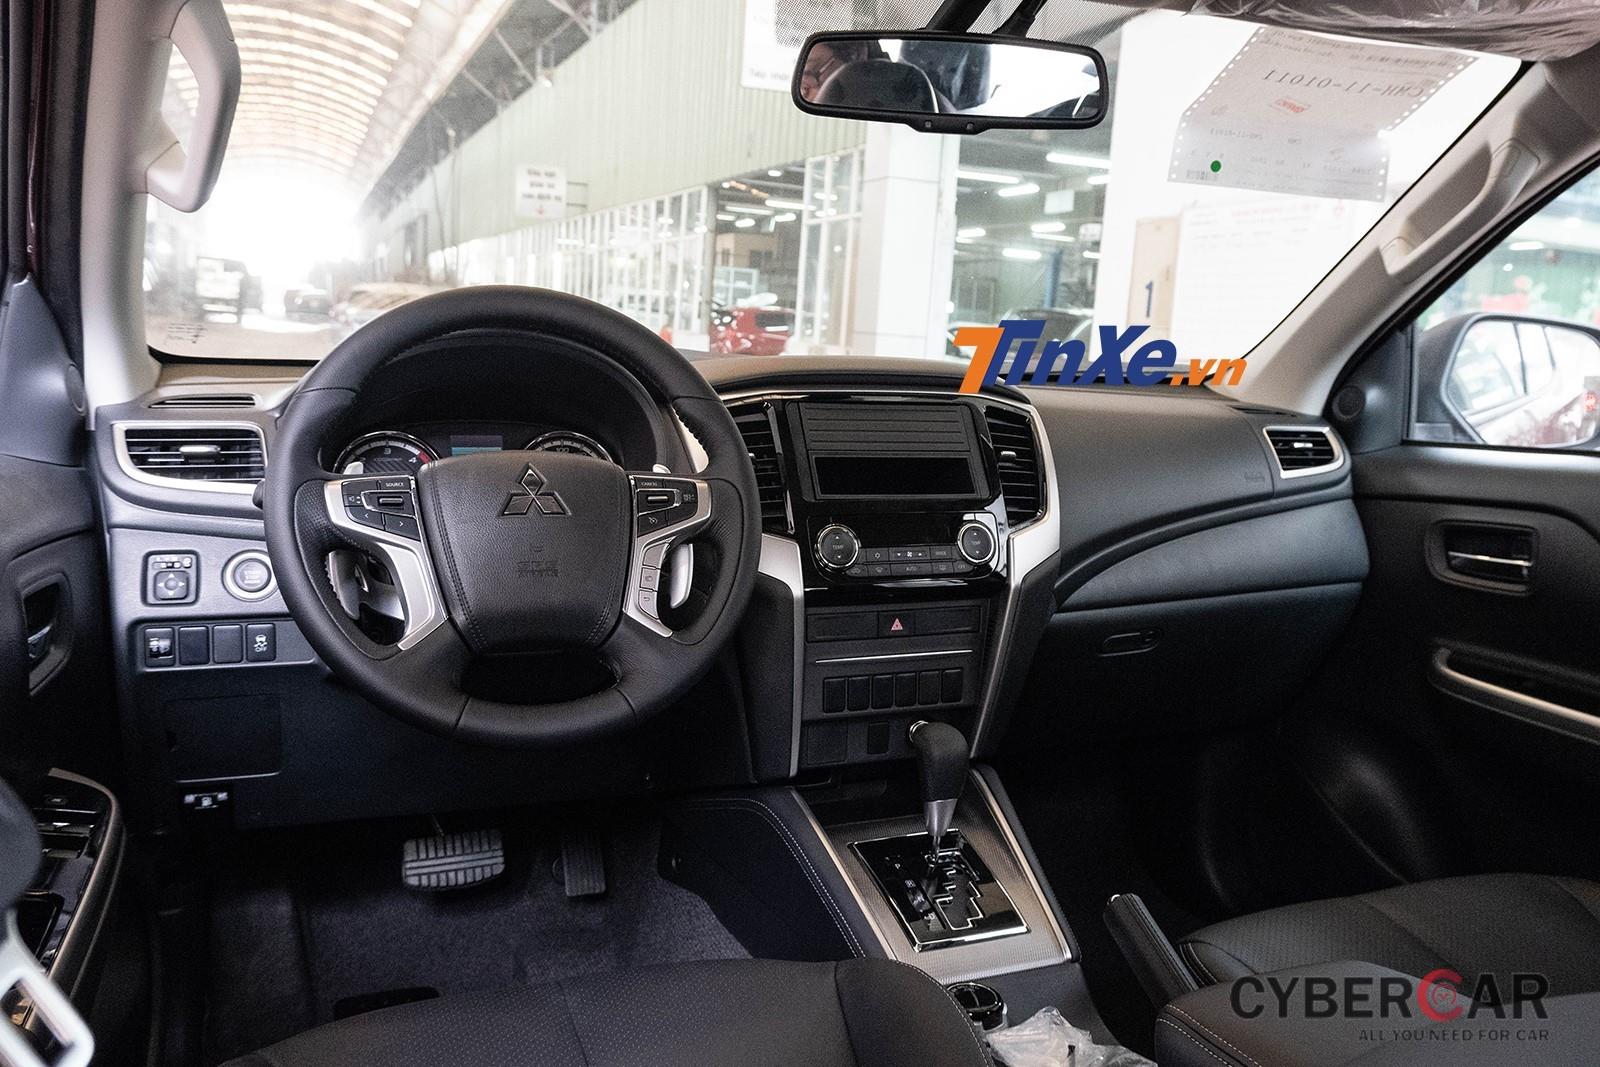 Tổng thể nội thất Mitsubishi Triton 2019 MIVEC 4x4 AT khá cao cấp và hiện đại tuy nhiên khuyết thiếu màn hình cảm ứng 6,75 inch do xe mới về đại lý chưa kịp lắp